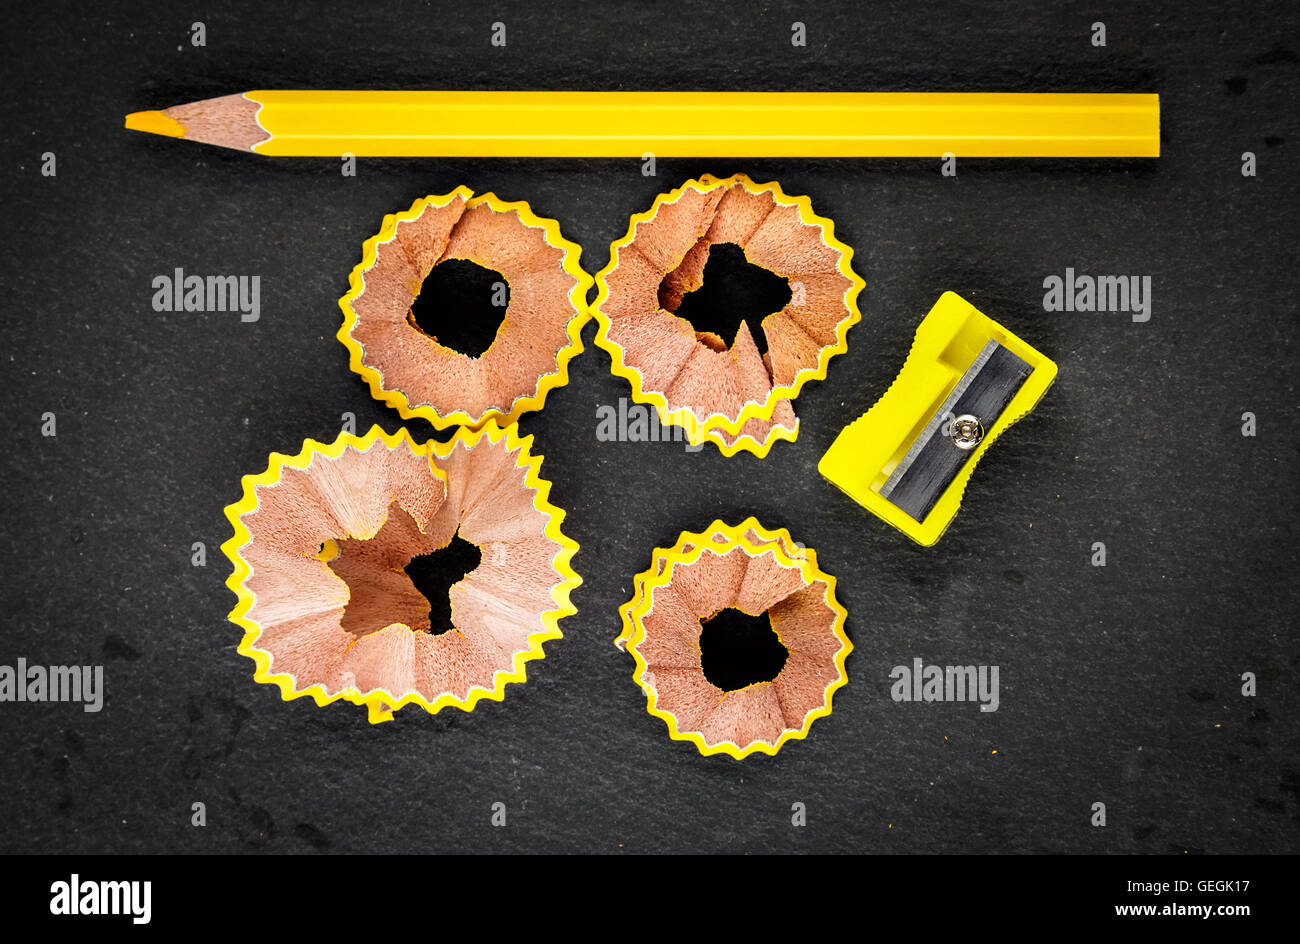 Gelbe Späne Bleistift, gelbe Spitzer und gelbe Bleistift auf schwarzem Hintergrund. Horizontales Bild. Stockfoto